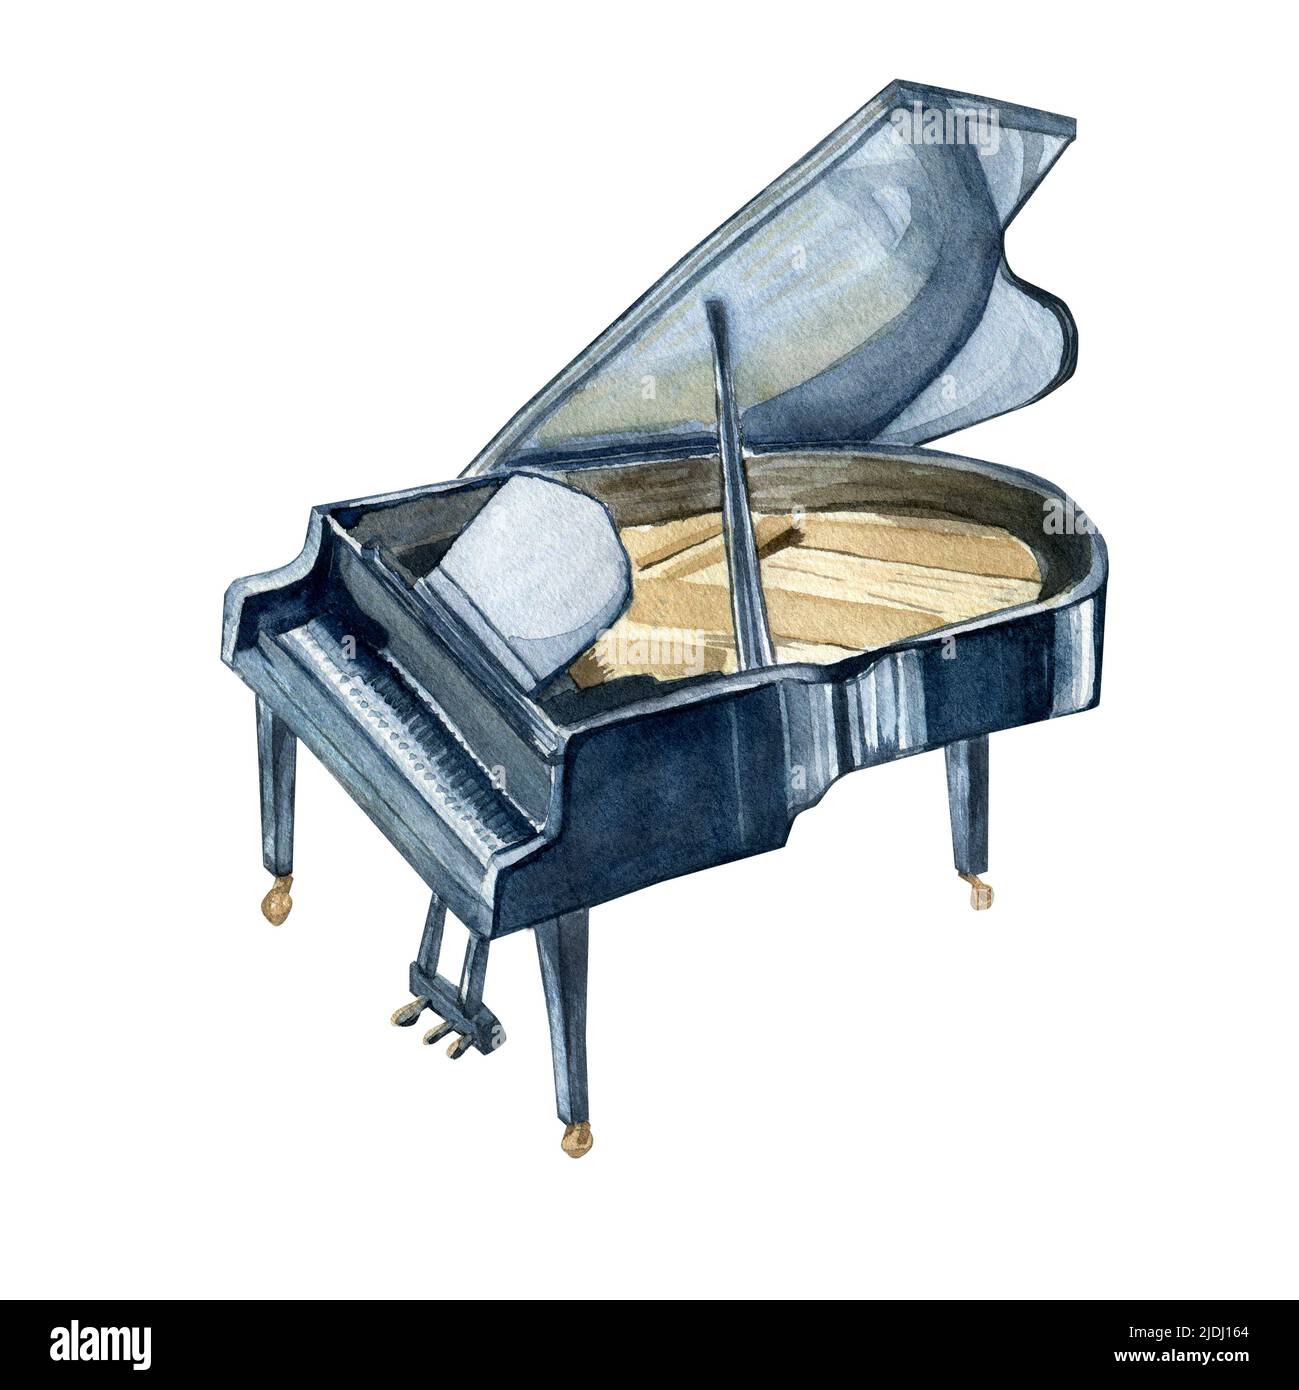 Illustration grand piano aquarelle sur fond blanc. Instrument de musique classique peint à la main. Instrument à cordes d'orchestre symphonique pour Banque D'Images